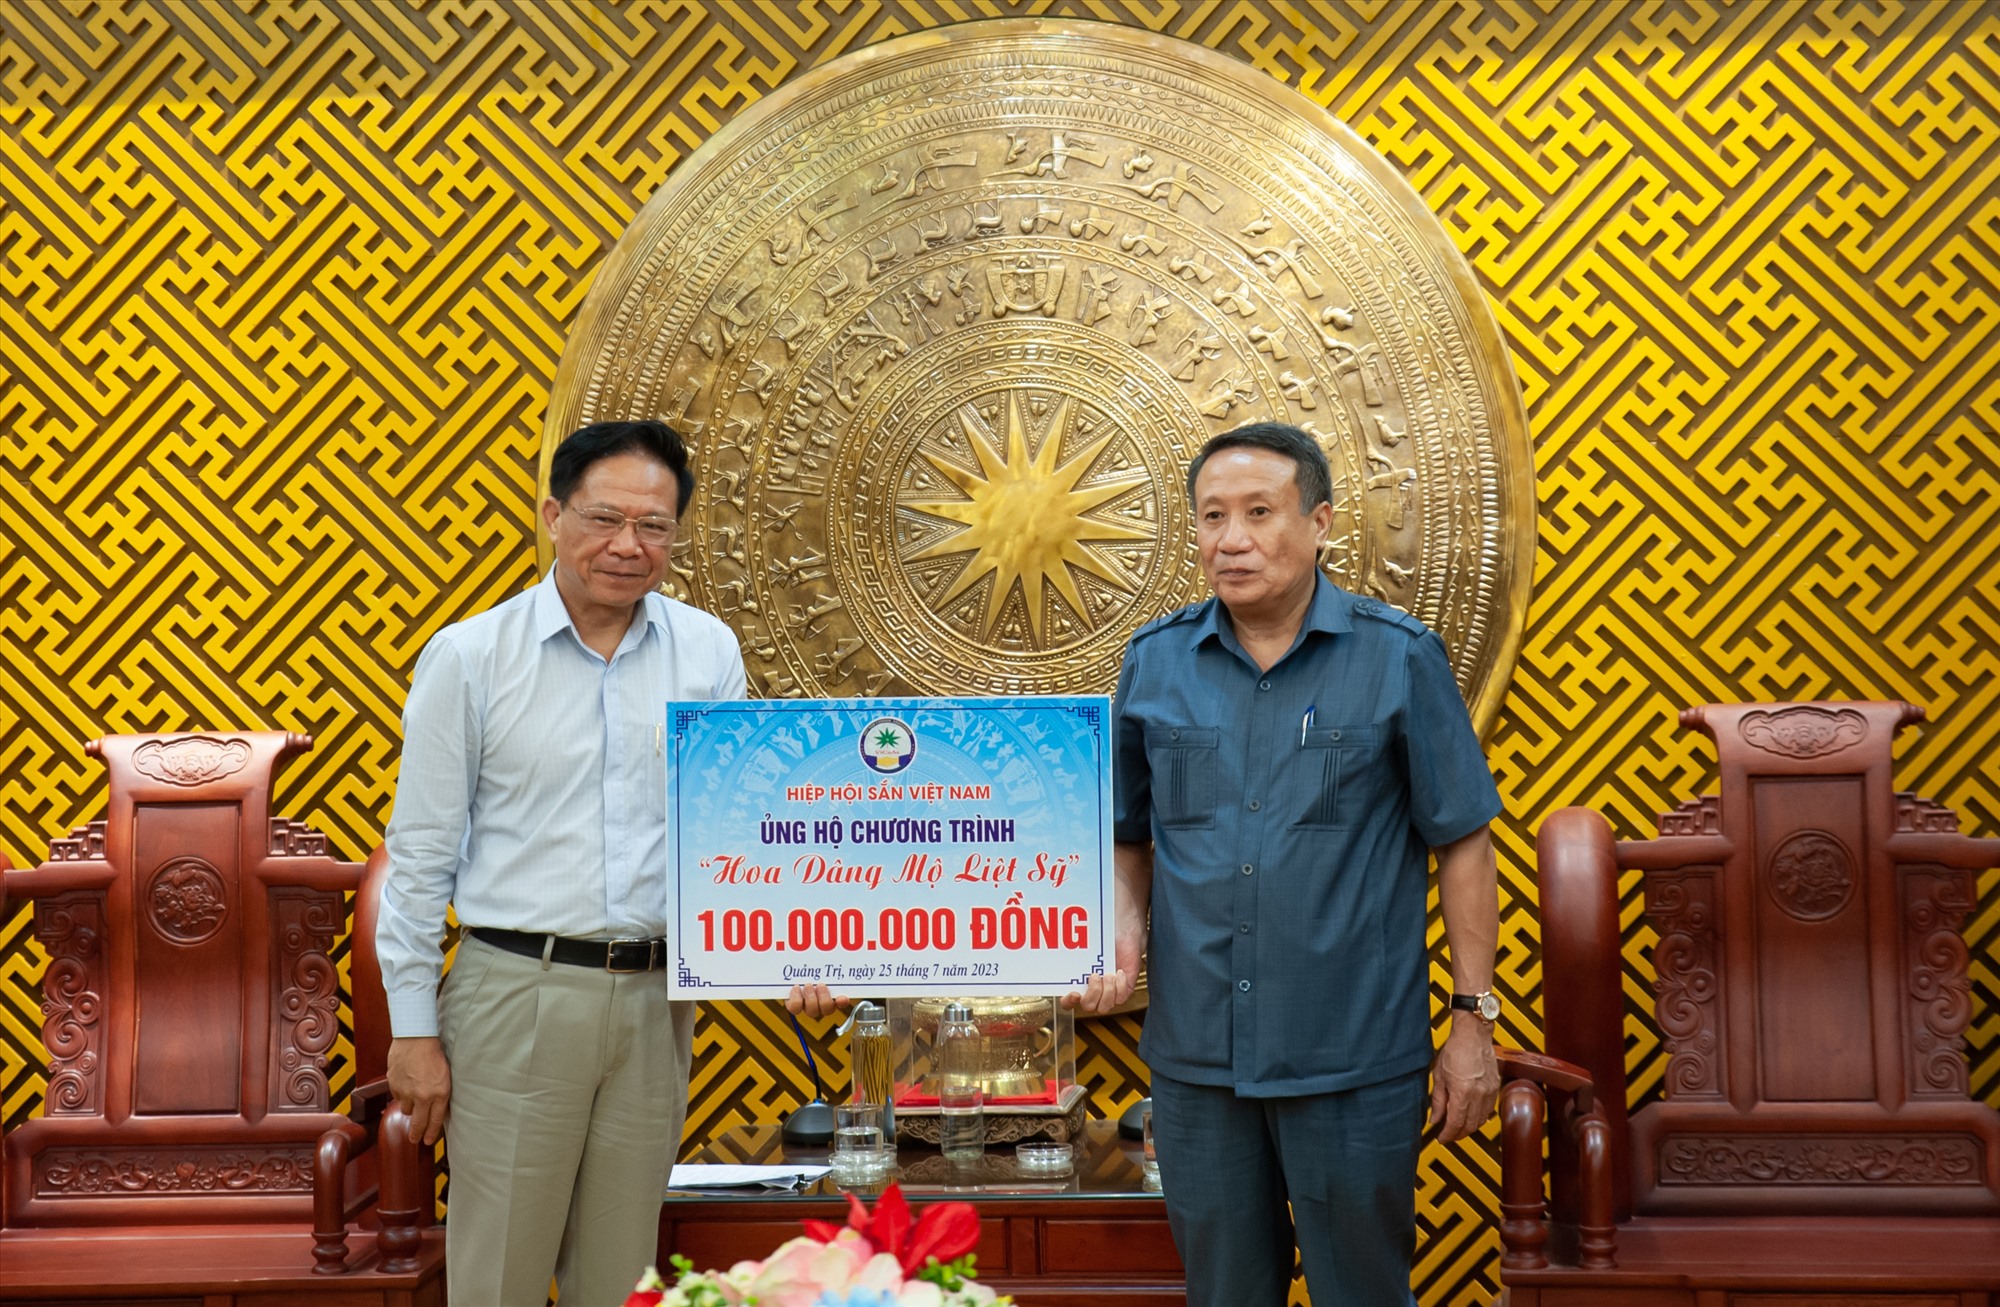 Hiệp hội Sắn Việt Nam ủng hộ Chương trình Hoa dâng mộ liệt sĩ tỉnh Quảng Trị 100 triệu đồng - Ảnh: Trần Tuyền